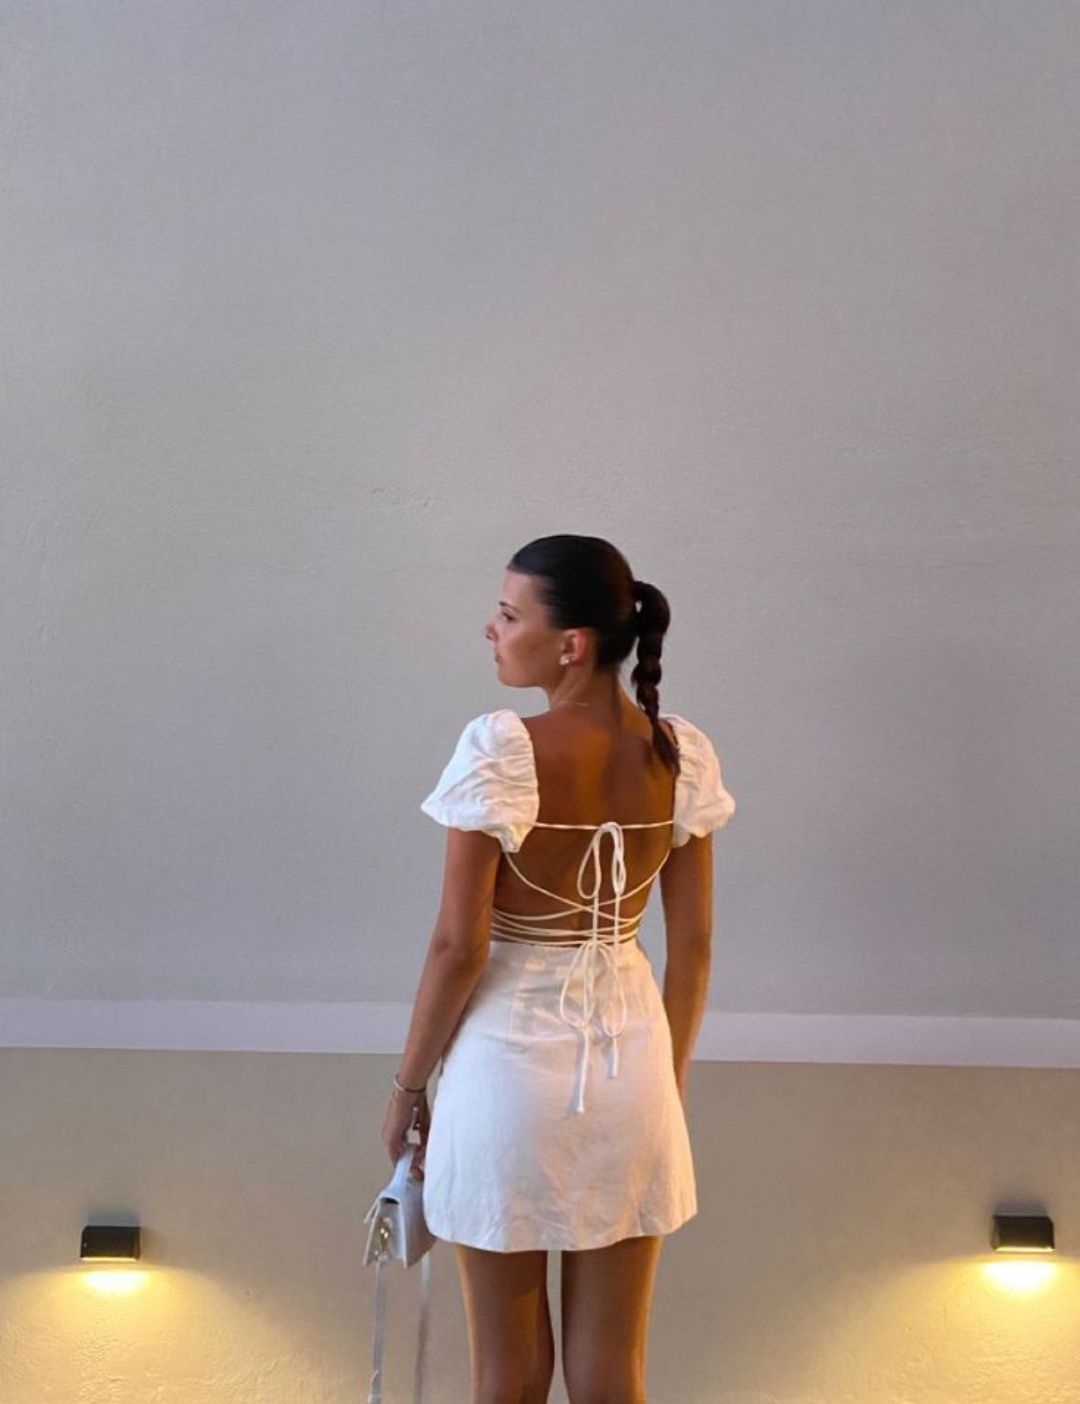 Белое платье с открытой спиной